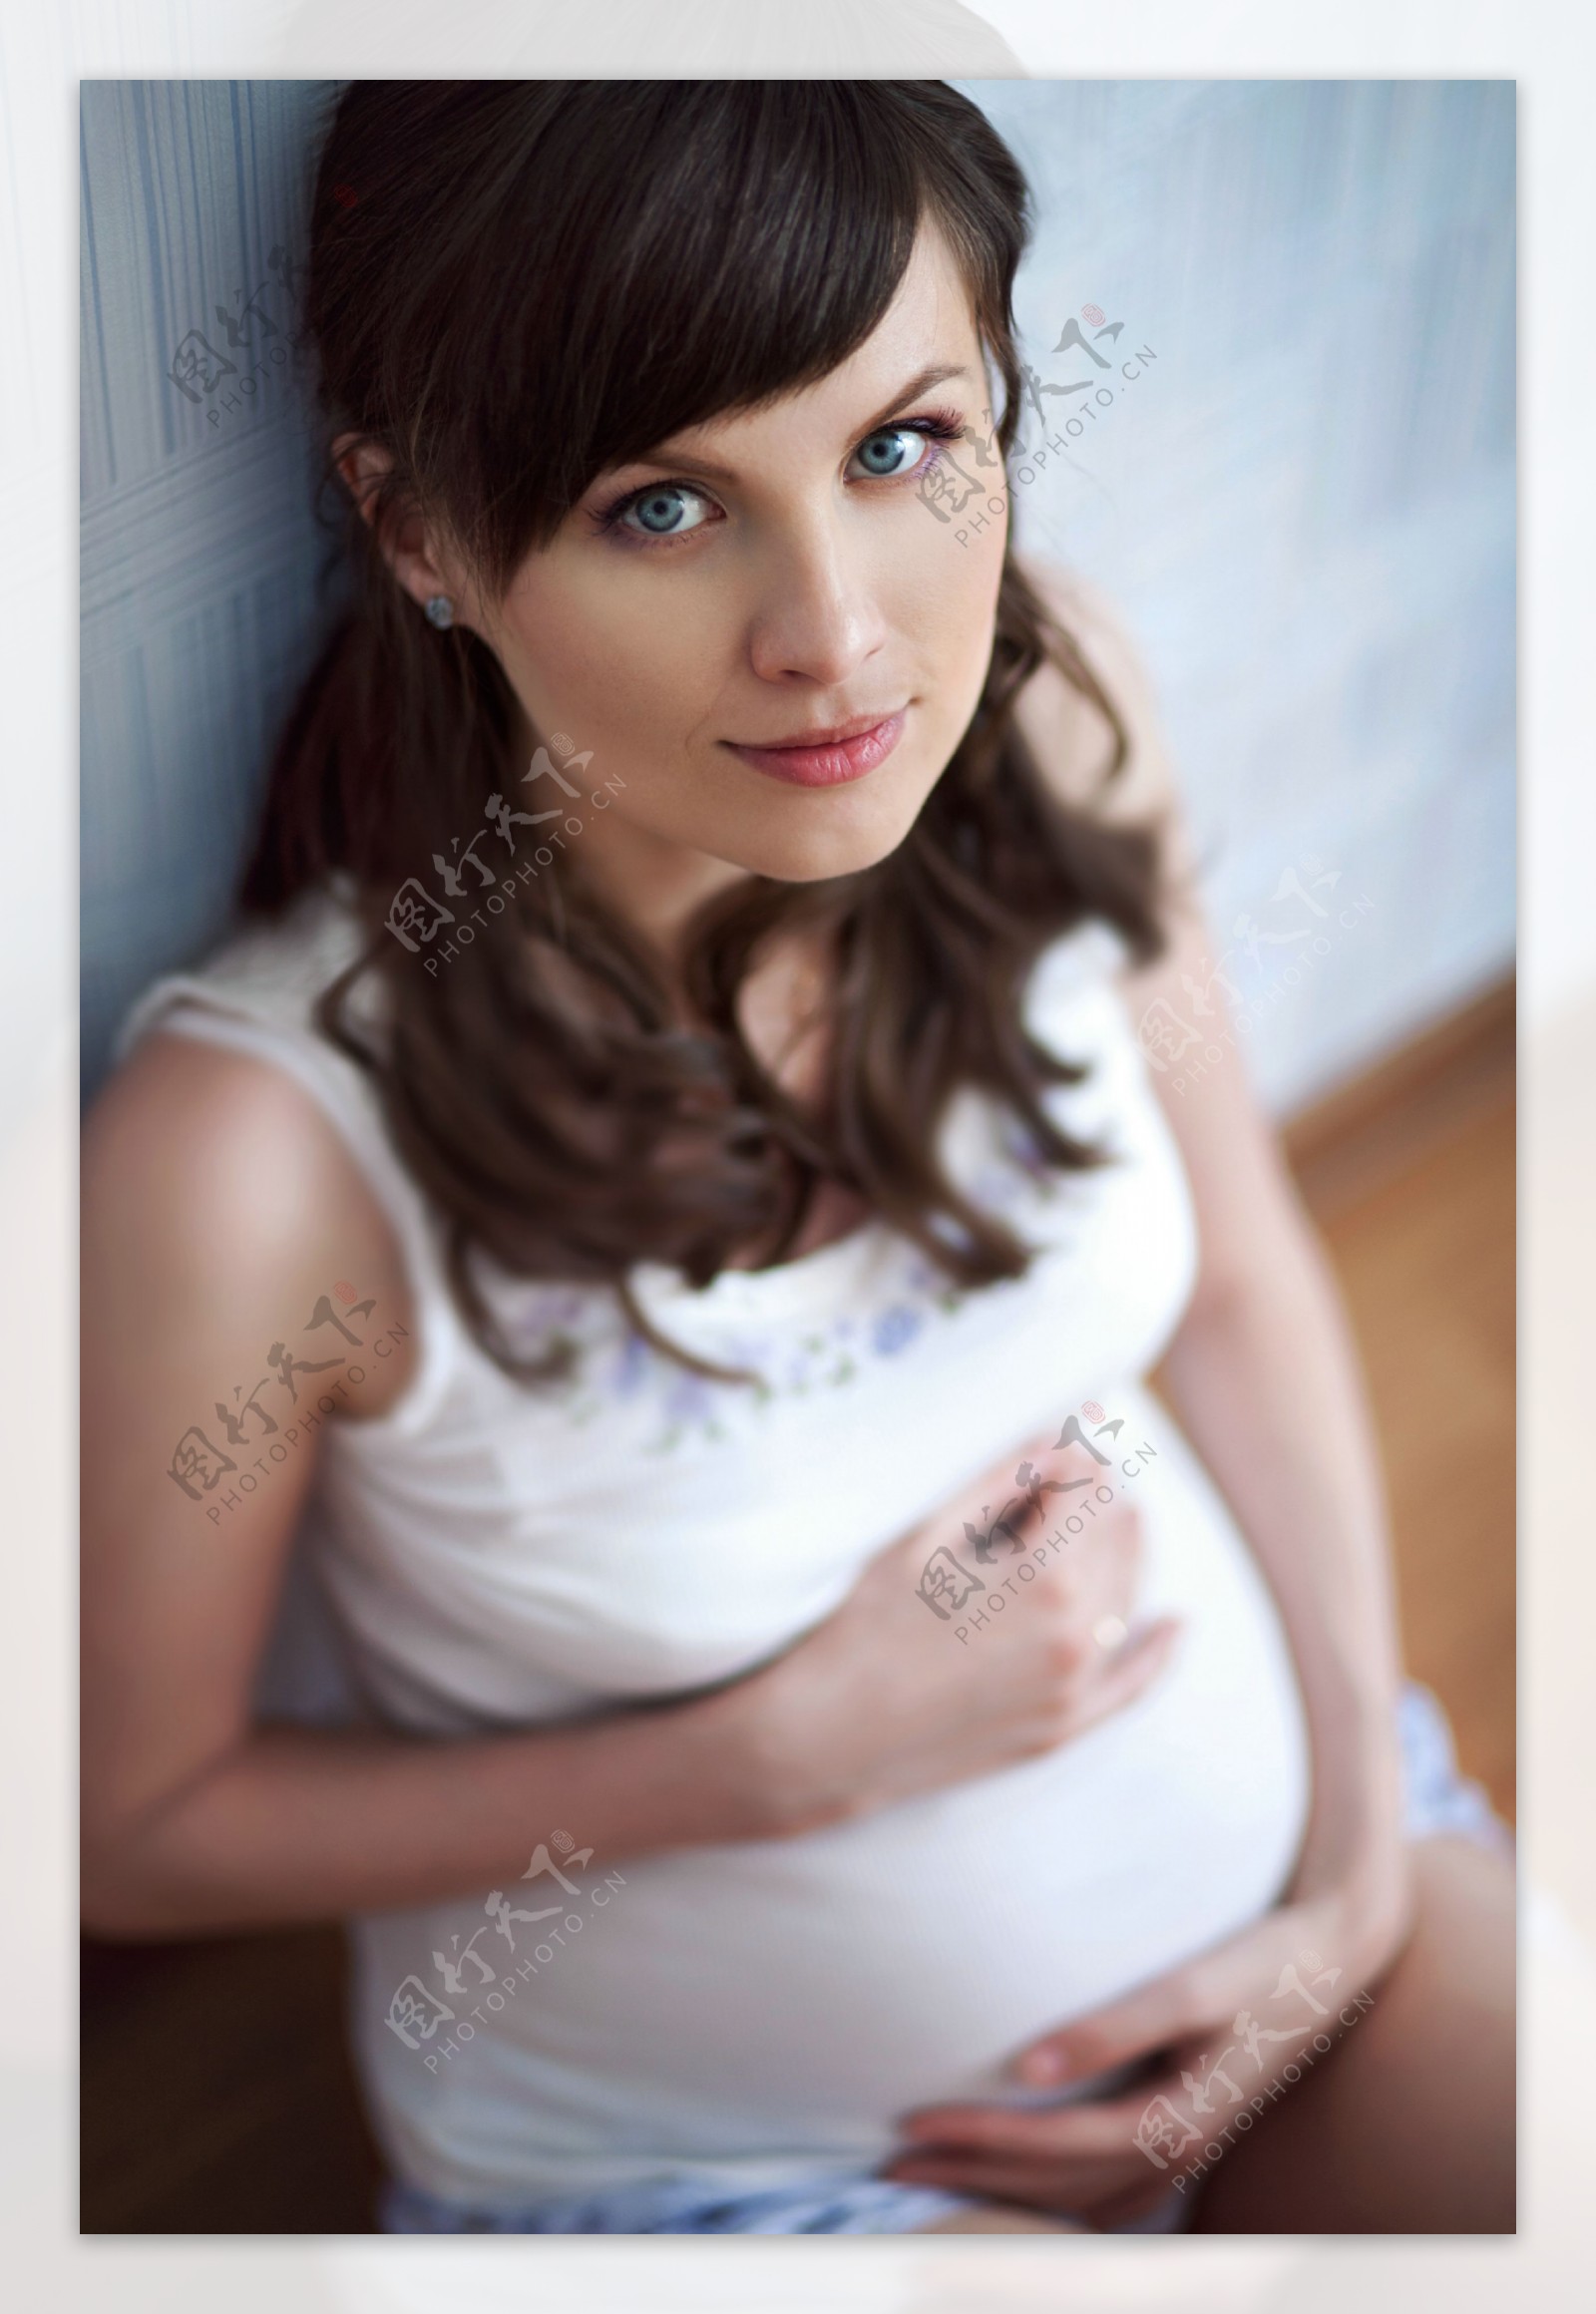 摸着肚皮向上看的孕妇图片